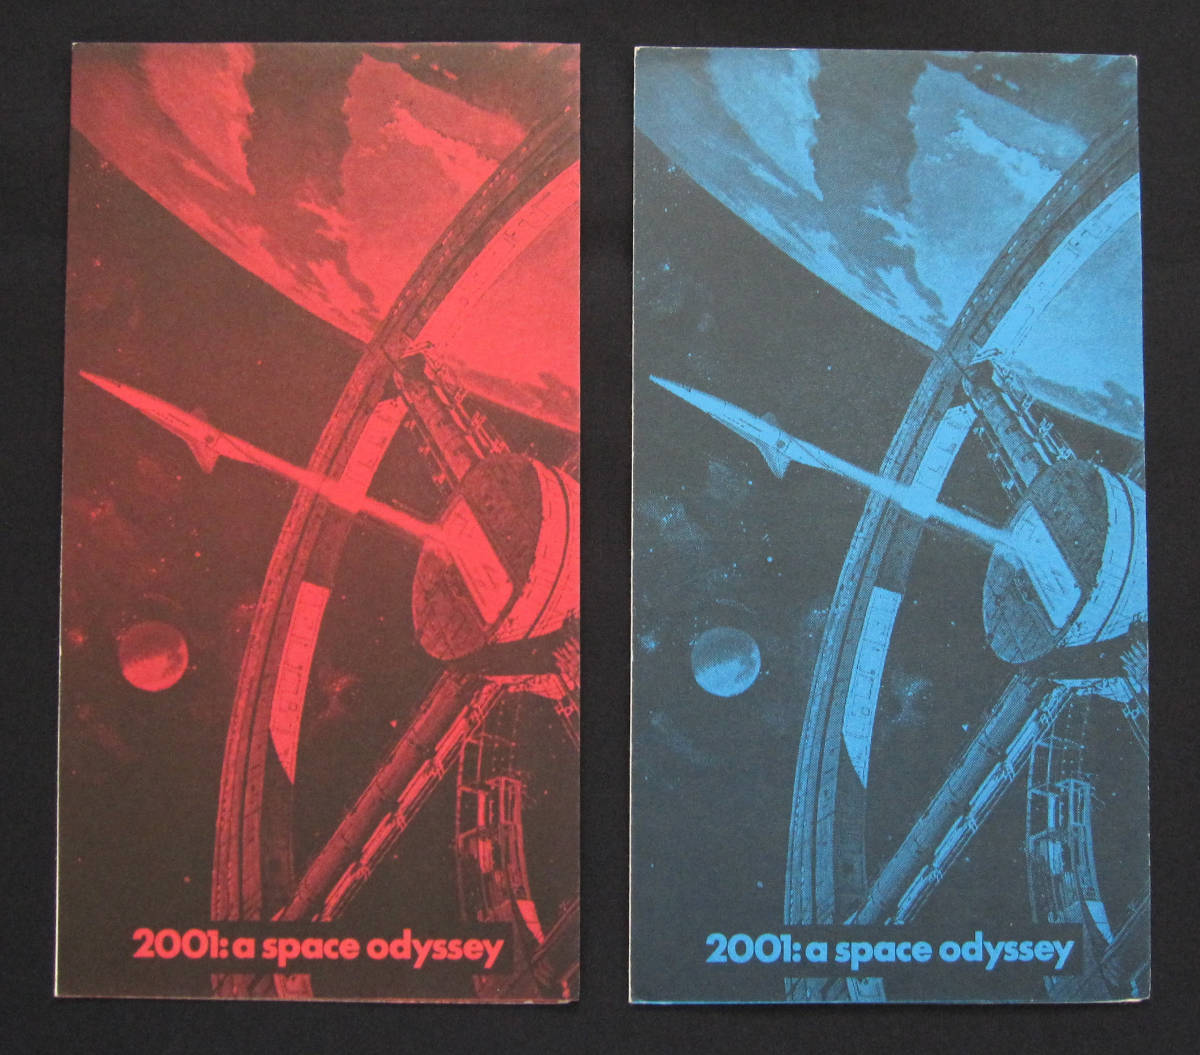 2001年宇宙の旅 ローカル劇場配布チラシ ★ 激レア ２色カラー版 セット ポスターデザイン